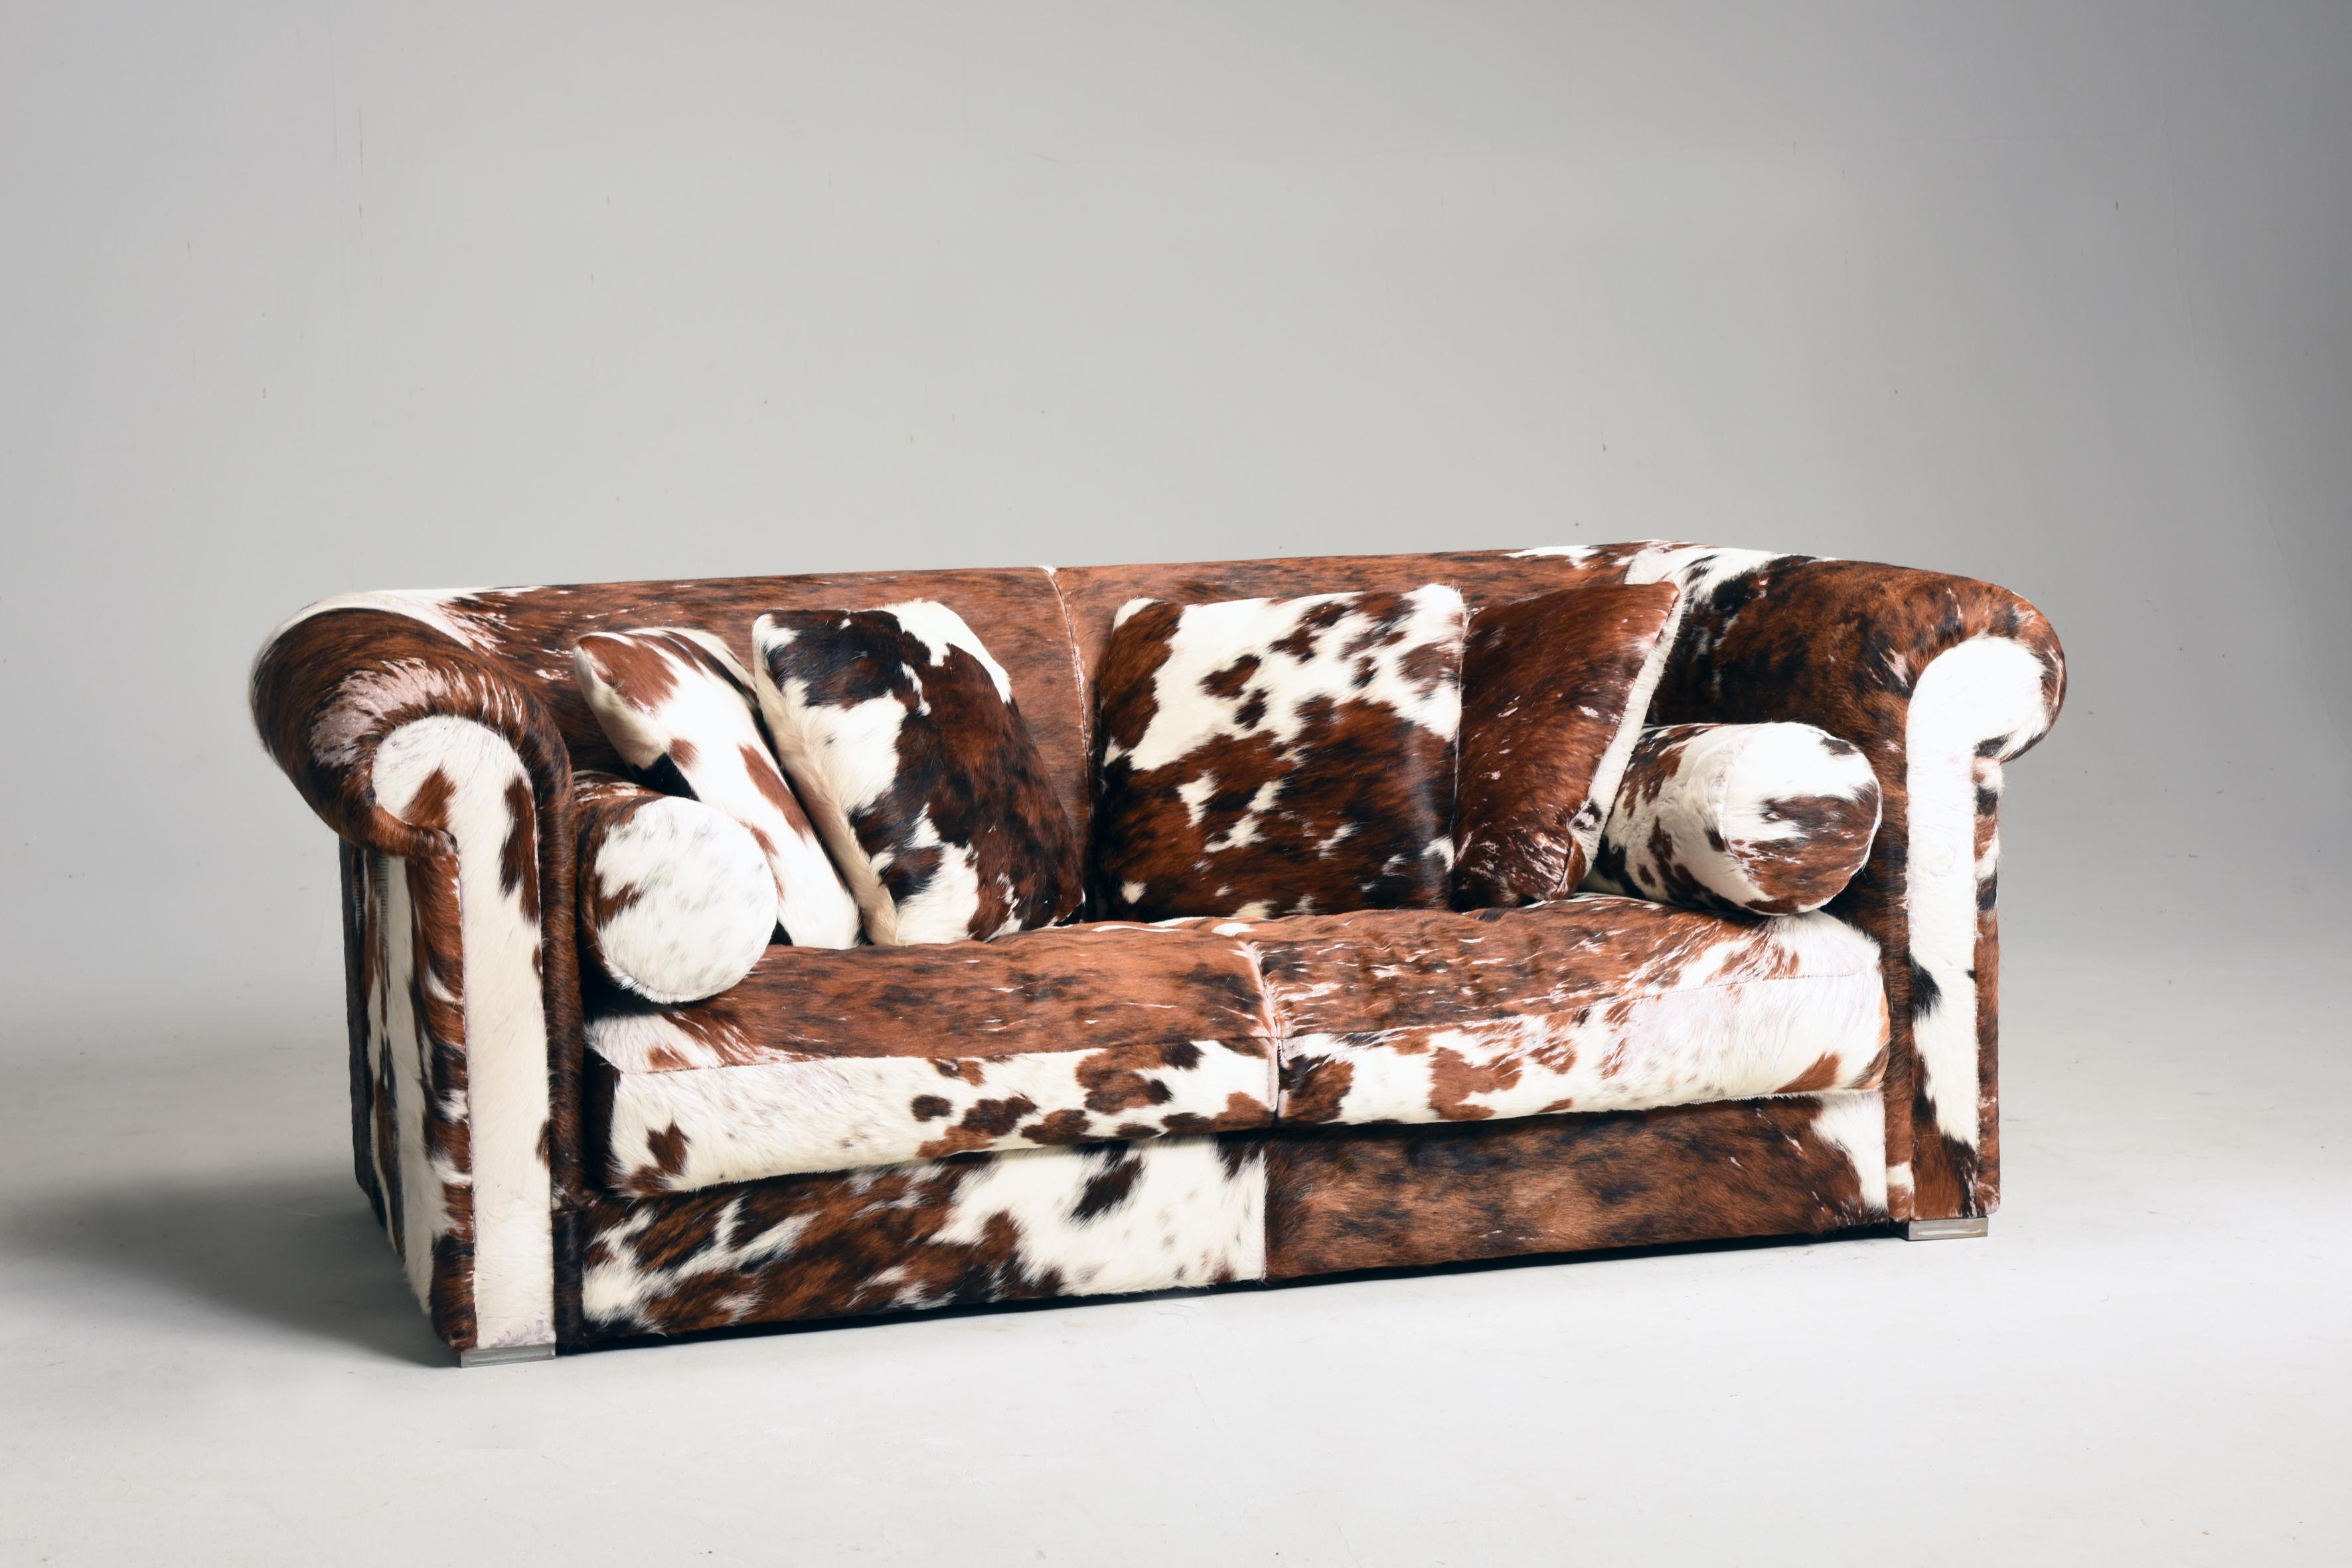 Italienisches Ponyfell-Sofa und Kissen von Baxter aus den 1990er Jahren. Das Sofa kommt mit einer Reihe von Kissen quadratisch und röhrenförmig. Sie sind alle mit braunem und weißem Ponyfellleder gepolstert. Diese Art von Sofa ist ideal in einem